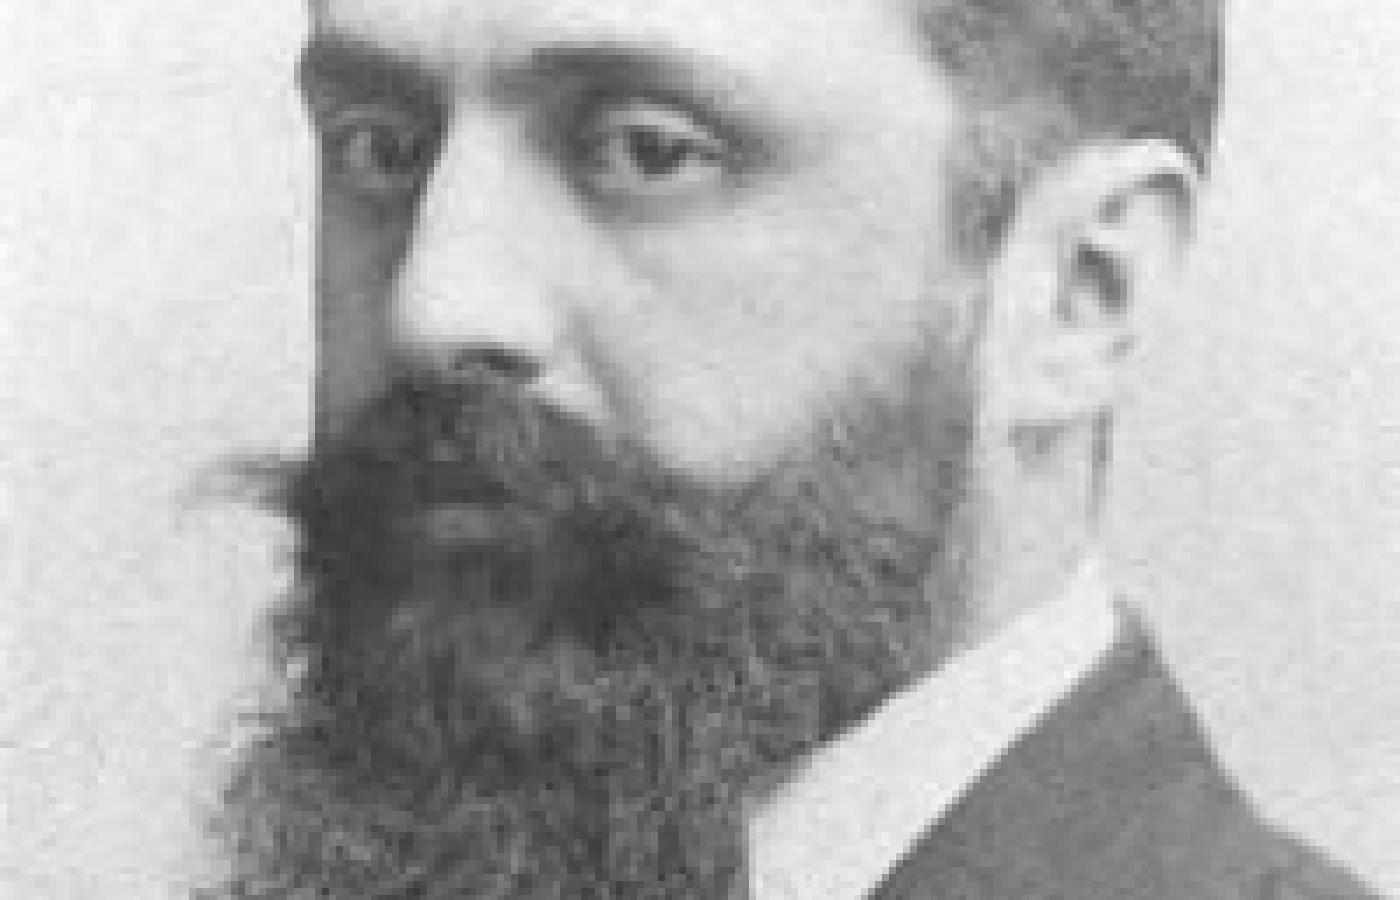 Teodor Herzl